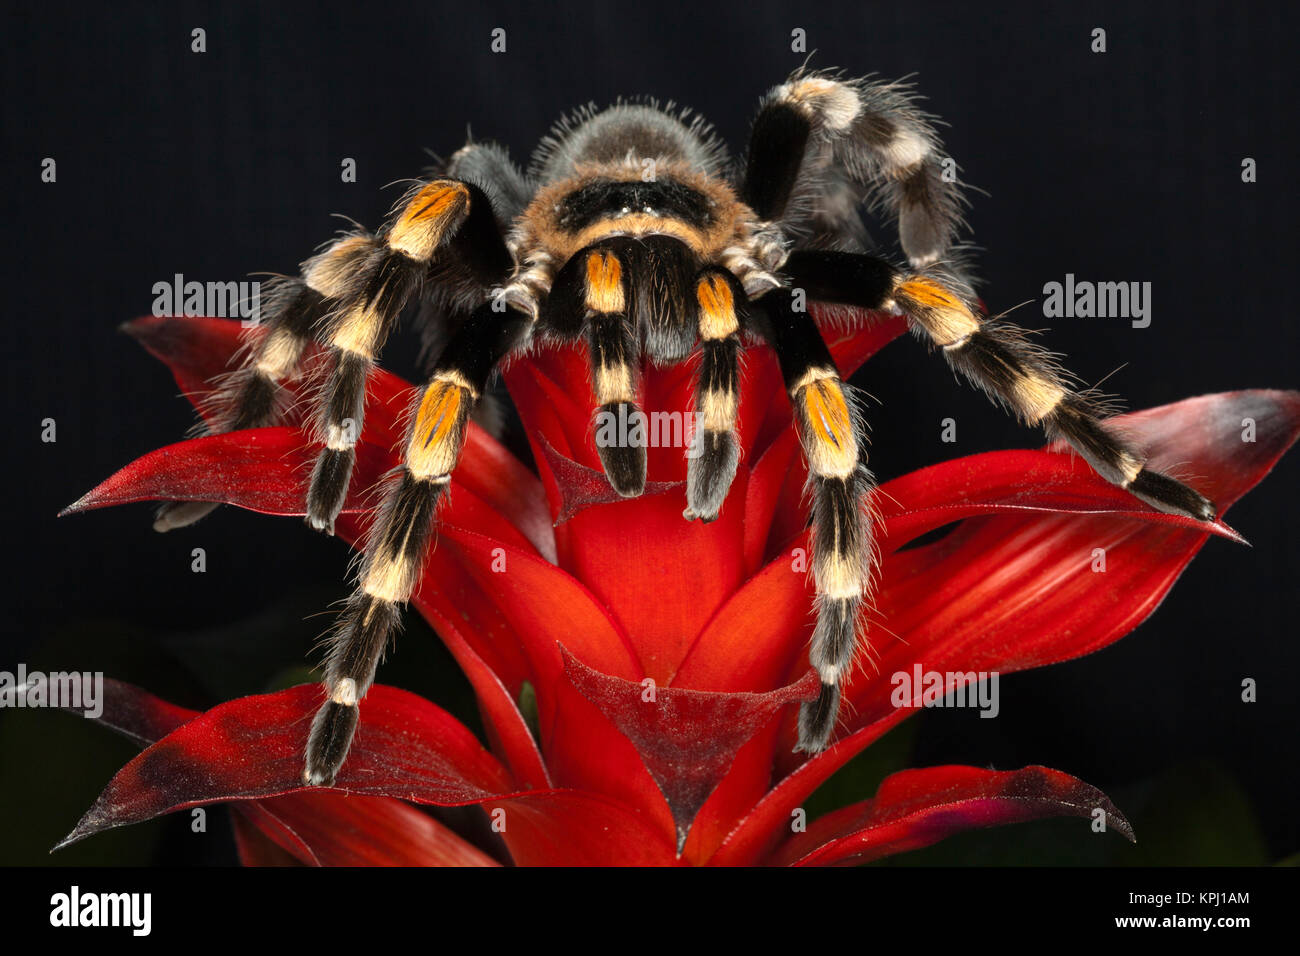 Mexican Red-Kneed Tarantula (Brachypelma smithi), Mexico Stock Photo